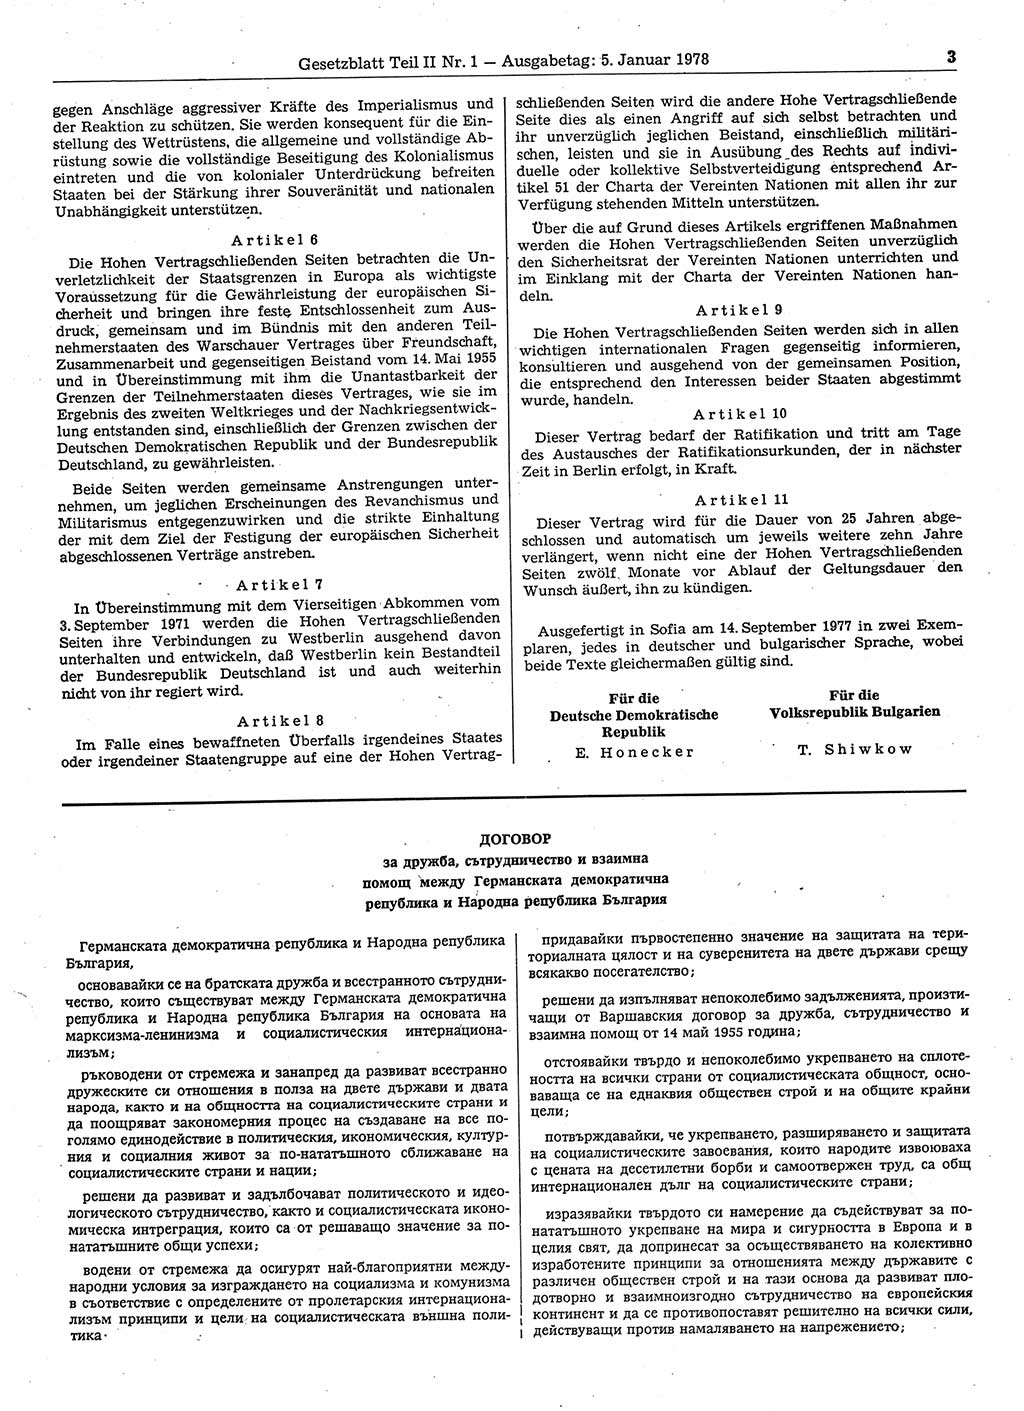 Gesetzblatt (GBl.) der Deutschen Demokratischen Republik (DDR) Teil ⅠⅠ 1978, Seite 3 (GBl. DDR ⅠⅠ 1978, S. 3)